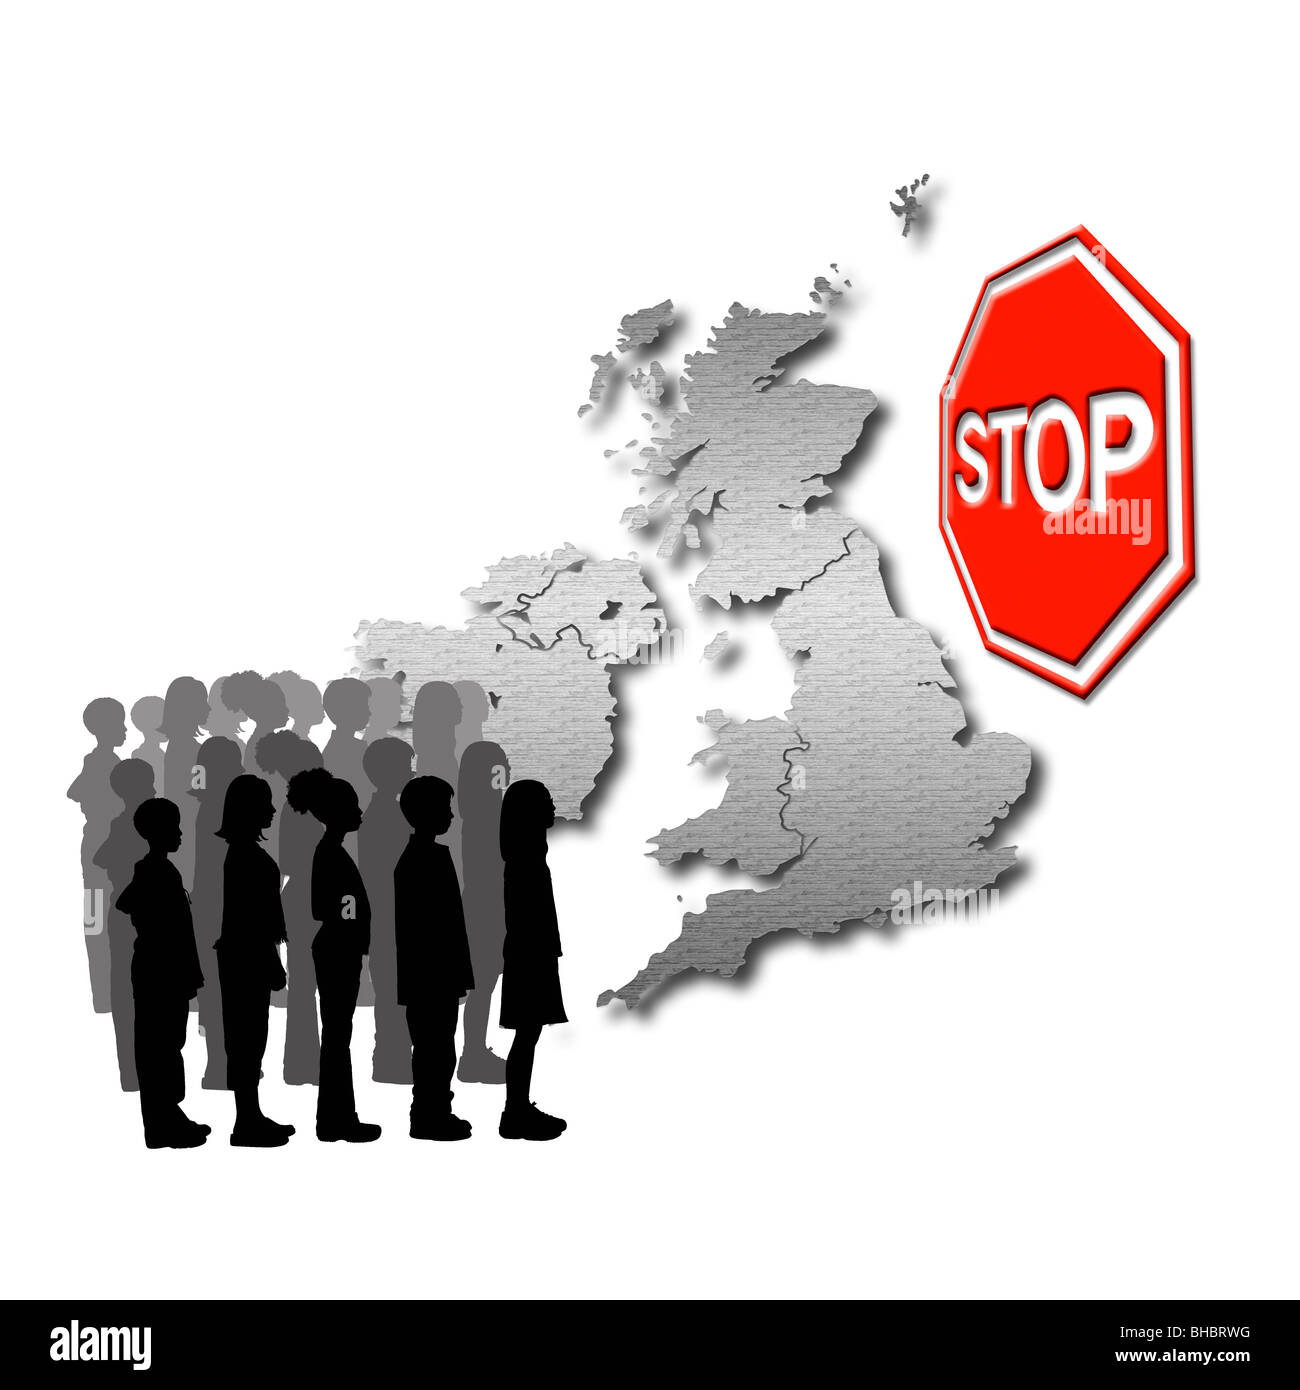 Stoppen Sie Einwanderung! Konzeptionelle Darstellung von Menschen, die versuchen, das Vereinigte Königreich mit einem großen roten Stoppzeichen vor Ihnen Stockfoto